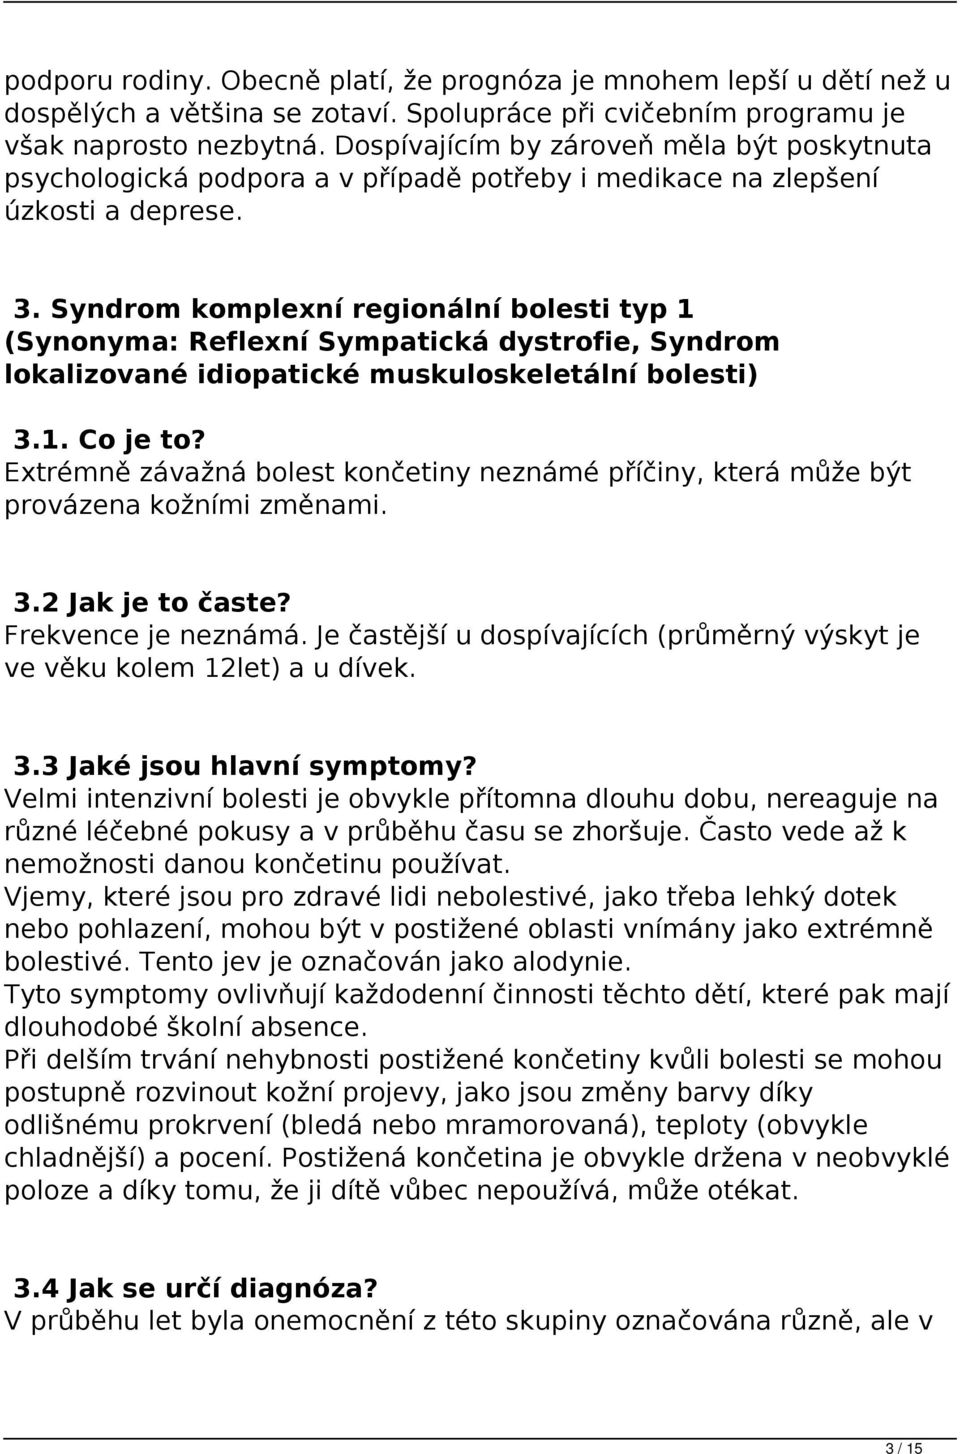 Syndrom komplexní regionální bolesti typ 1 (Synonyma: Reflexní Sympatická dystrofie, Syndrom lokalizované idiopatické muskuloskeletální bolesti) 3.1. Co je to?